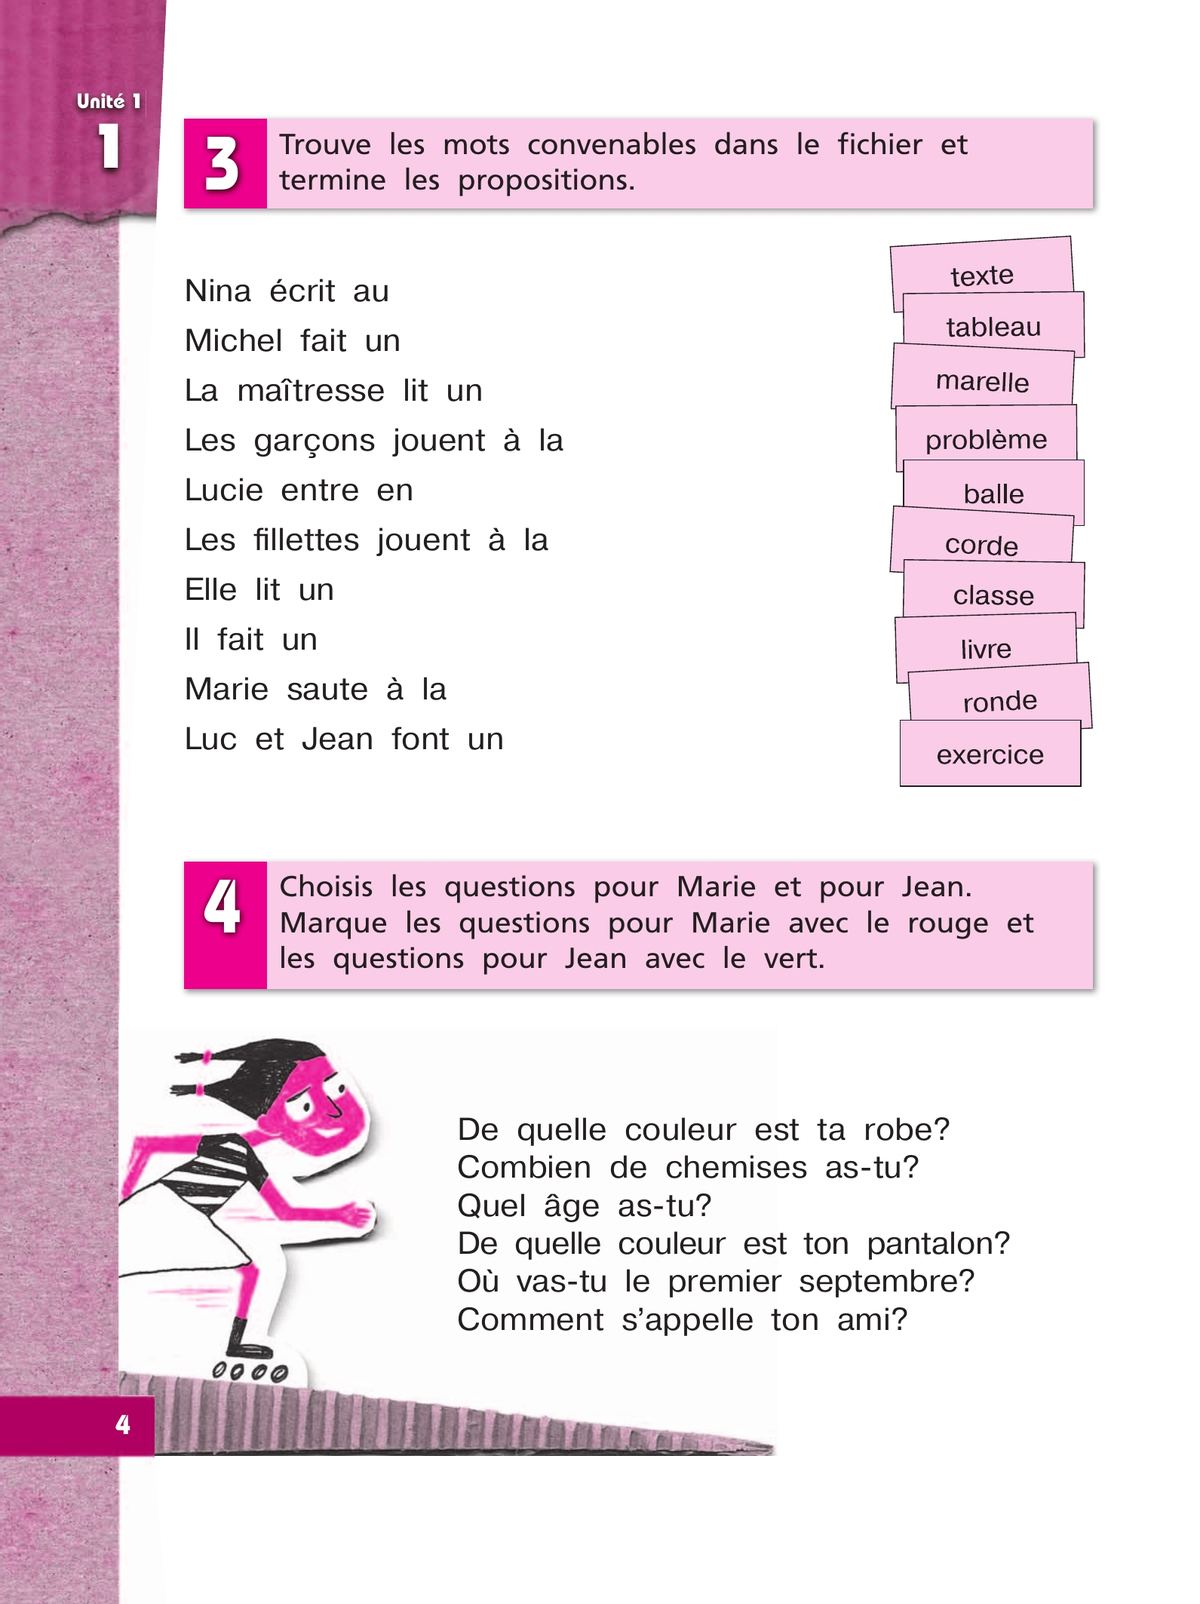 Французский язык. Рабочая тетрадь. 4 класс. Углубленный уровень 2